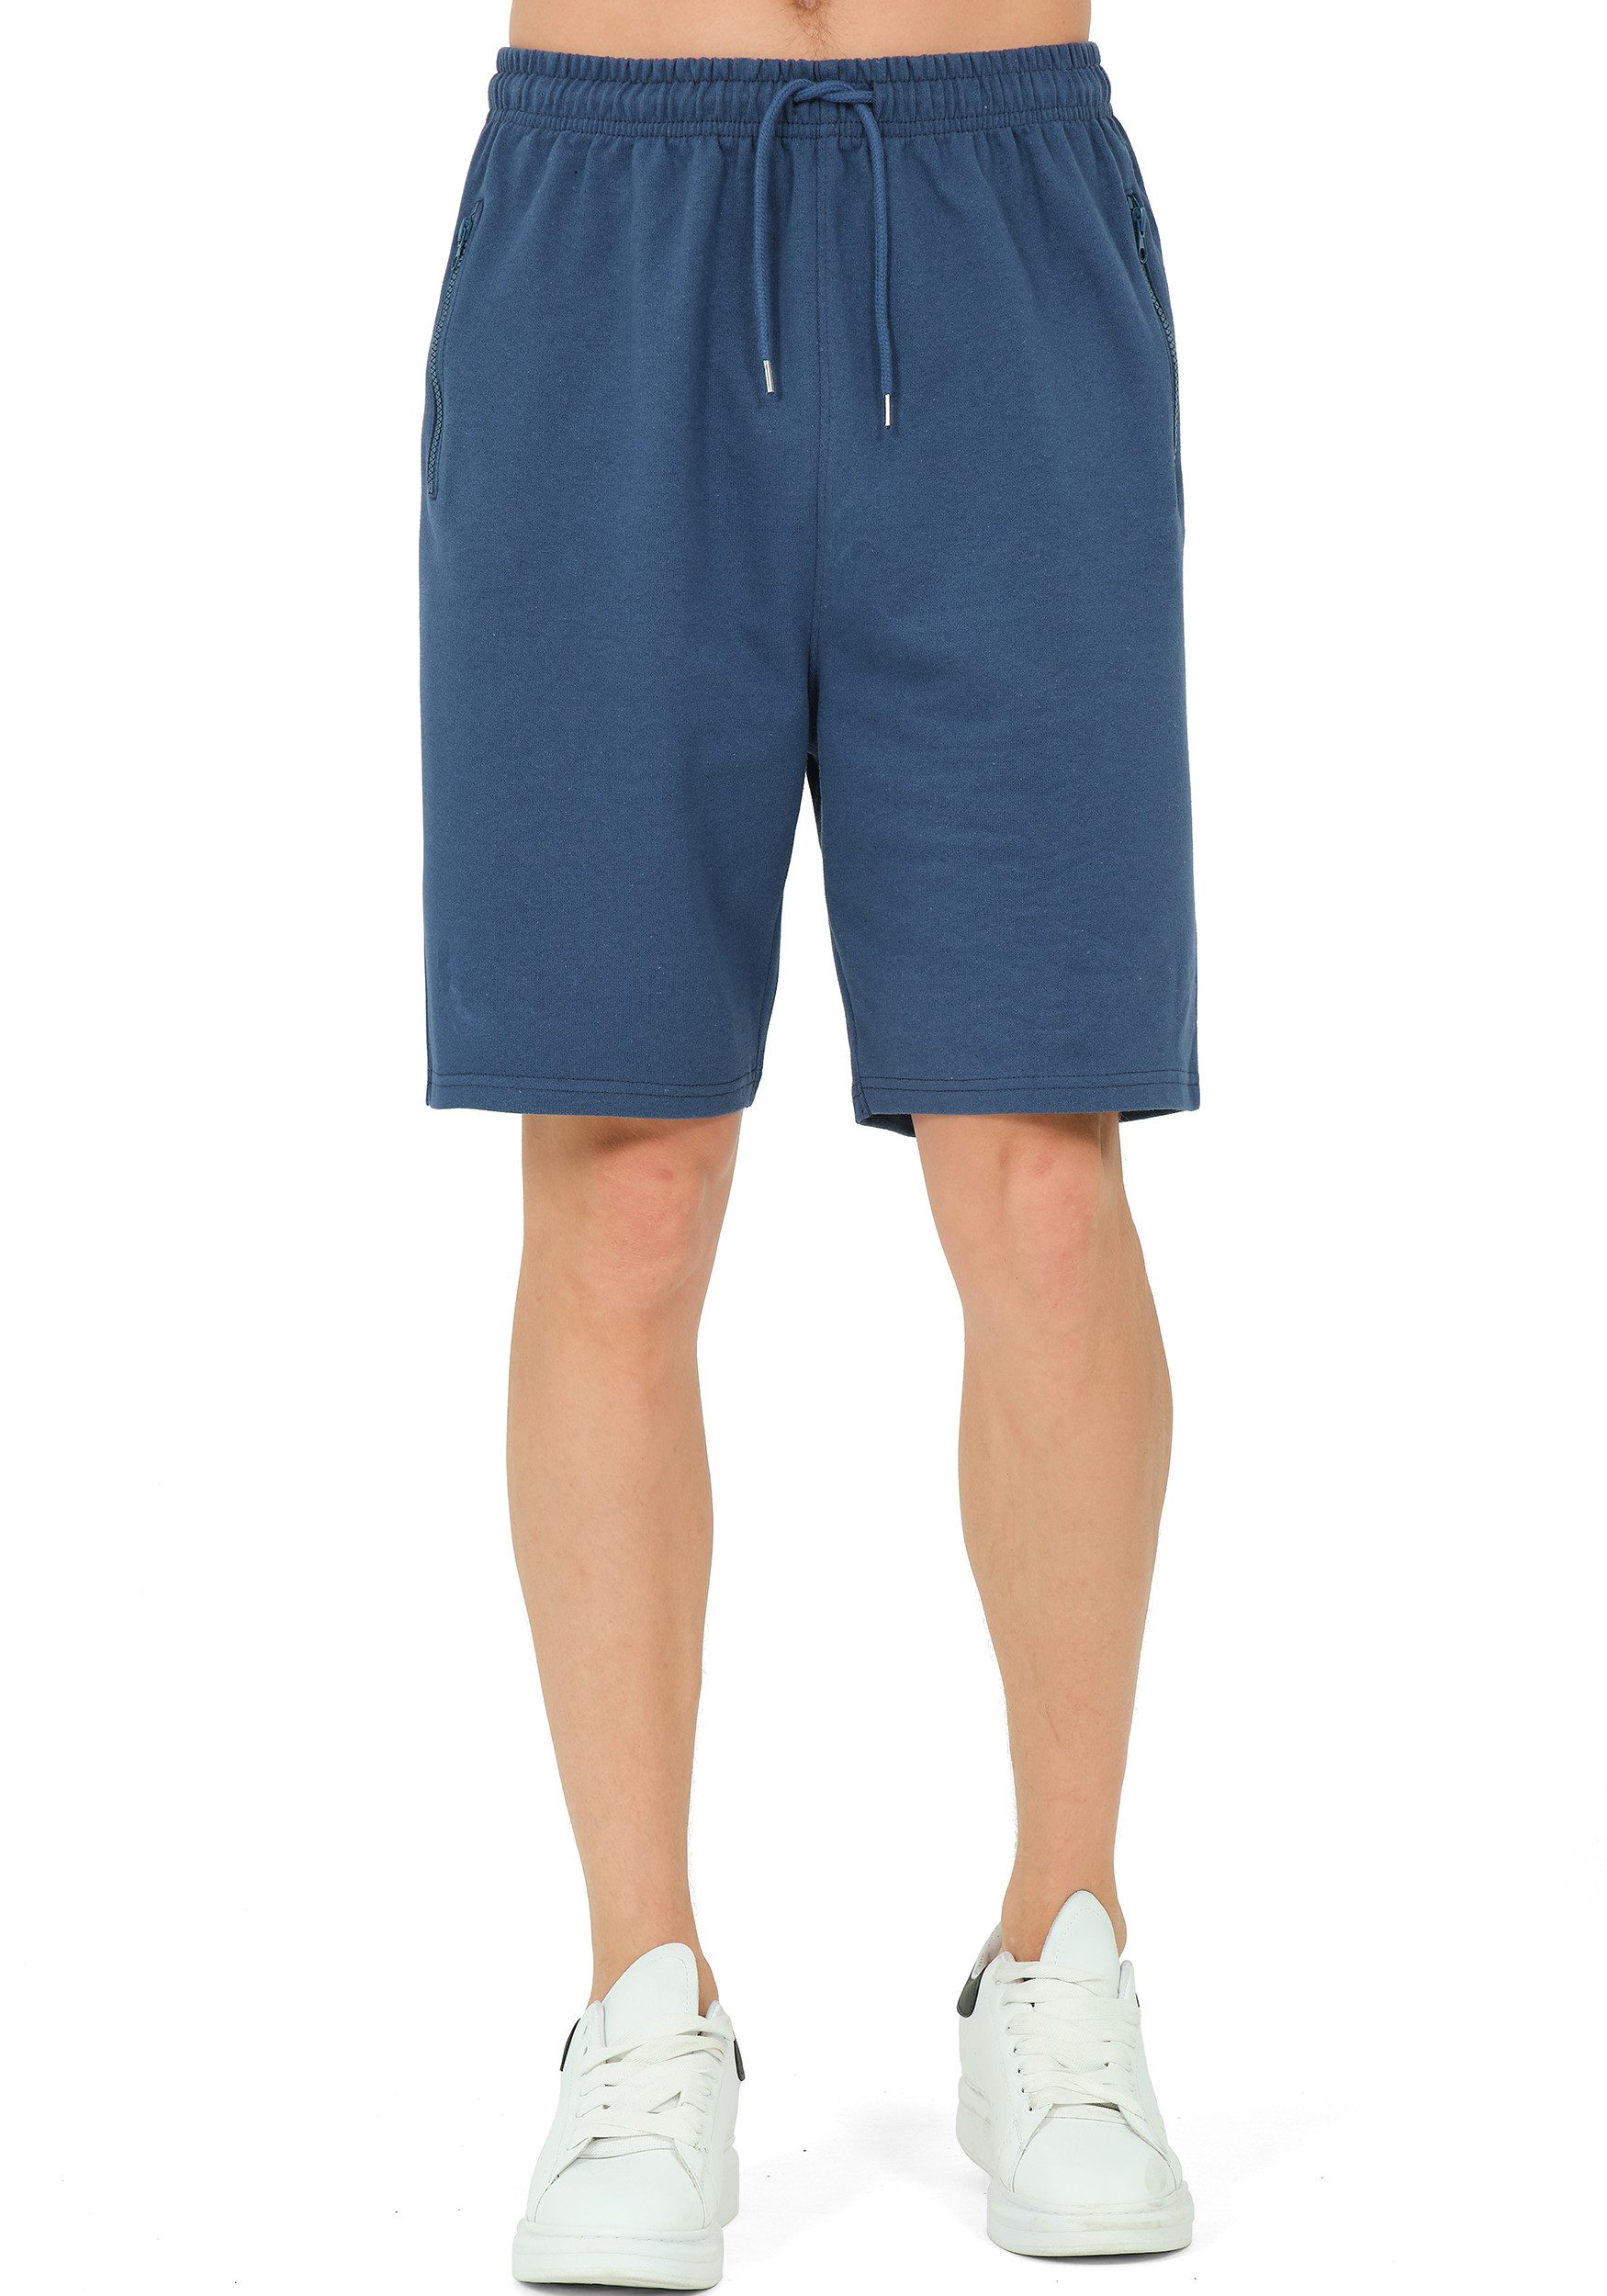 S&S Sweatshorts Kurze Hosen Herren Männer Sommer Baumwolle Lauf Bermuda Shorts Hose Baumwollmischung, Reißverschluss Taschen, Freizeit